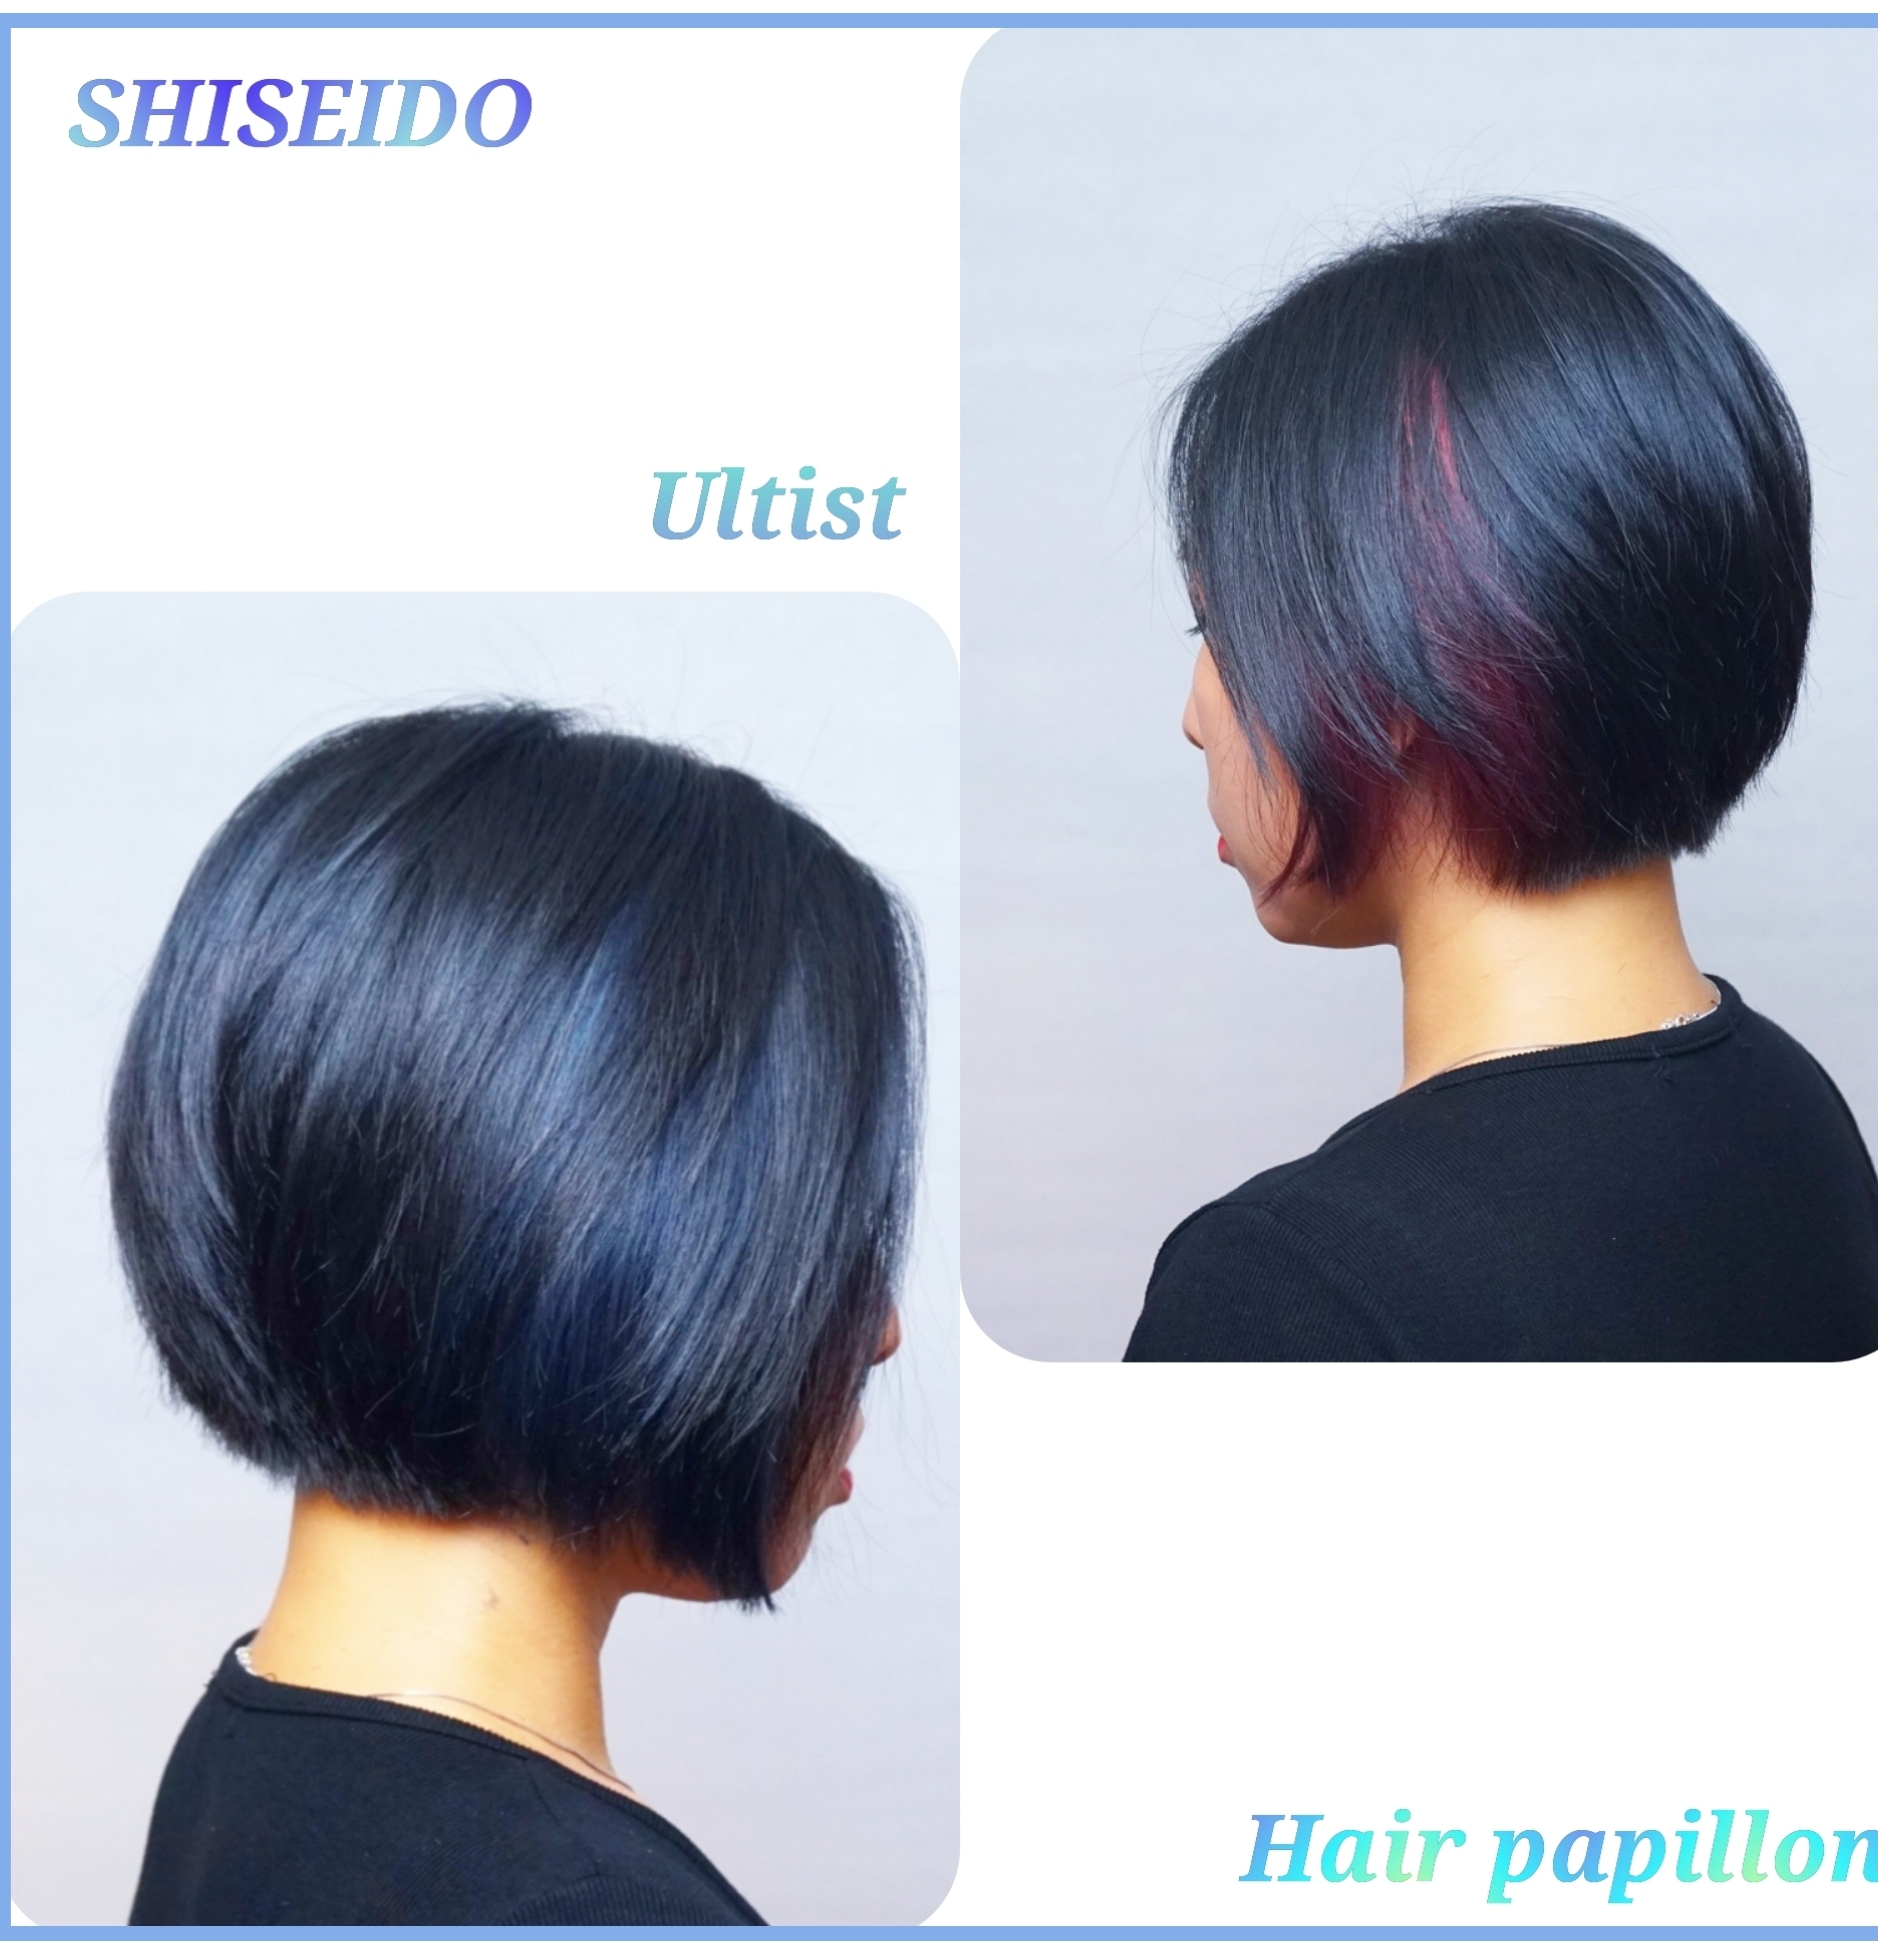 髮型作品参考:shiseido ultist